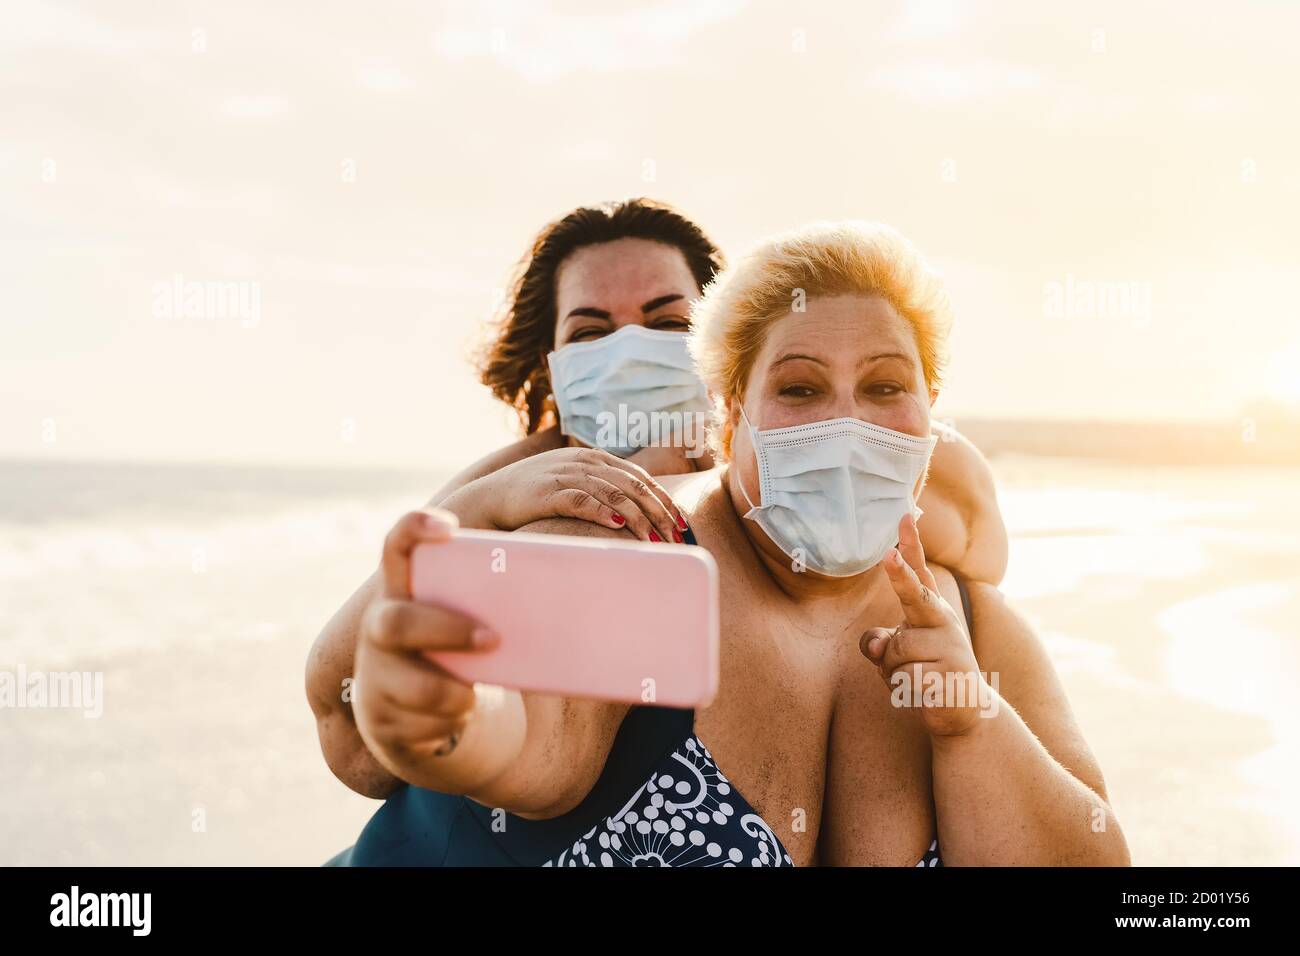 Glückliche Plus Größe Frauen nehmen Selfie mit Handy auf Der Strand - übergewichtige Freunde haben Spaß im Urlaub während corona-Virus-Pandemie Stockfoto